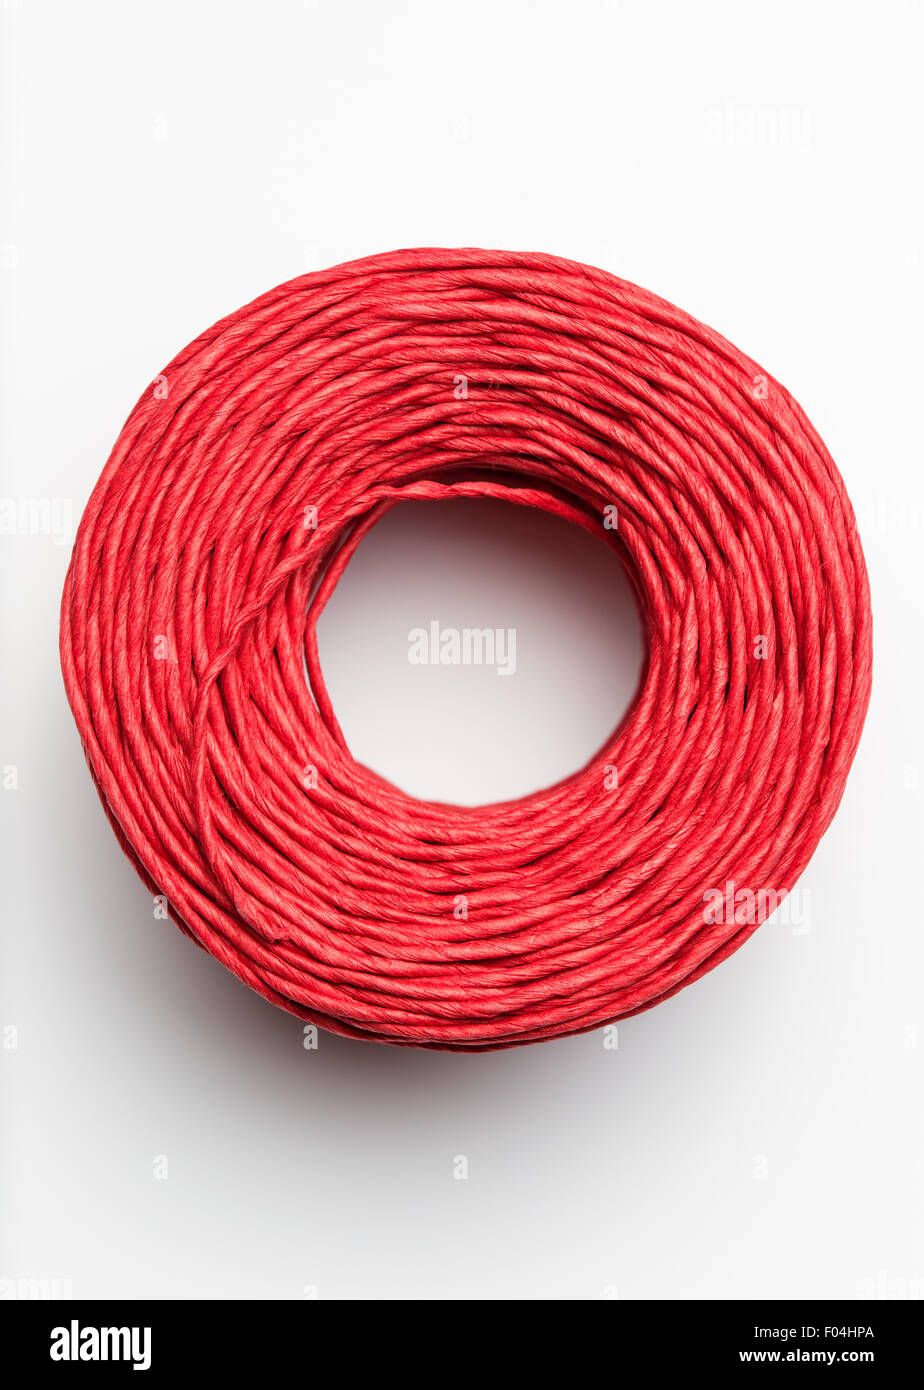 Raffia Red Ribbon Reel 30 m